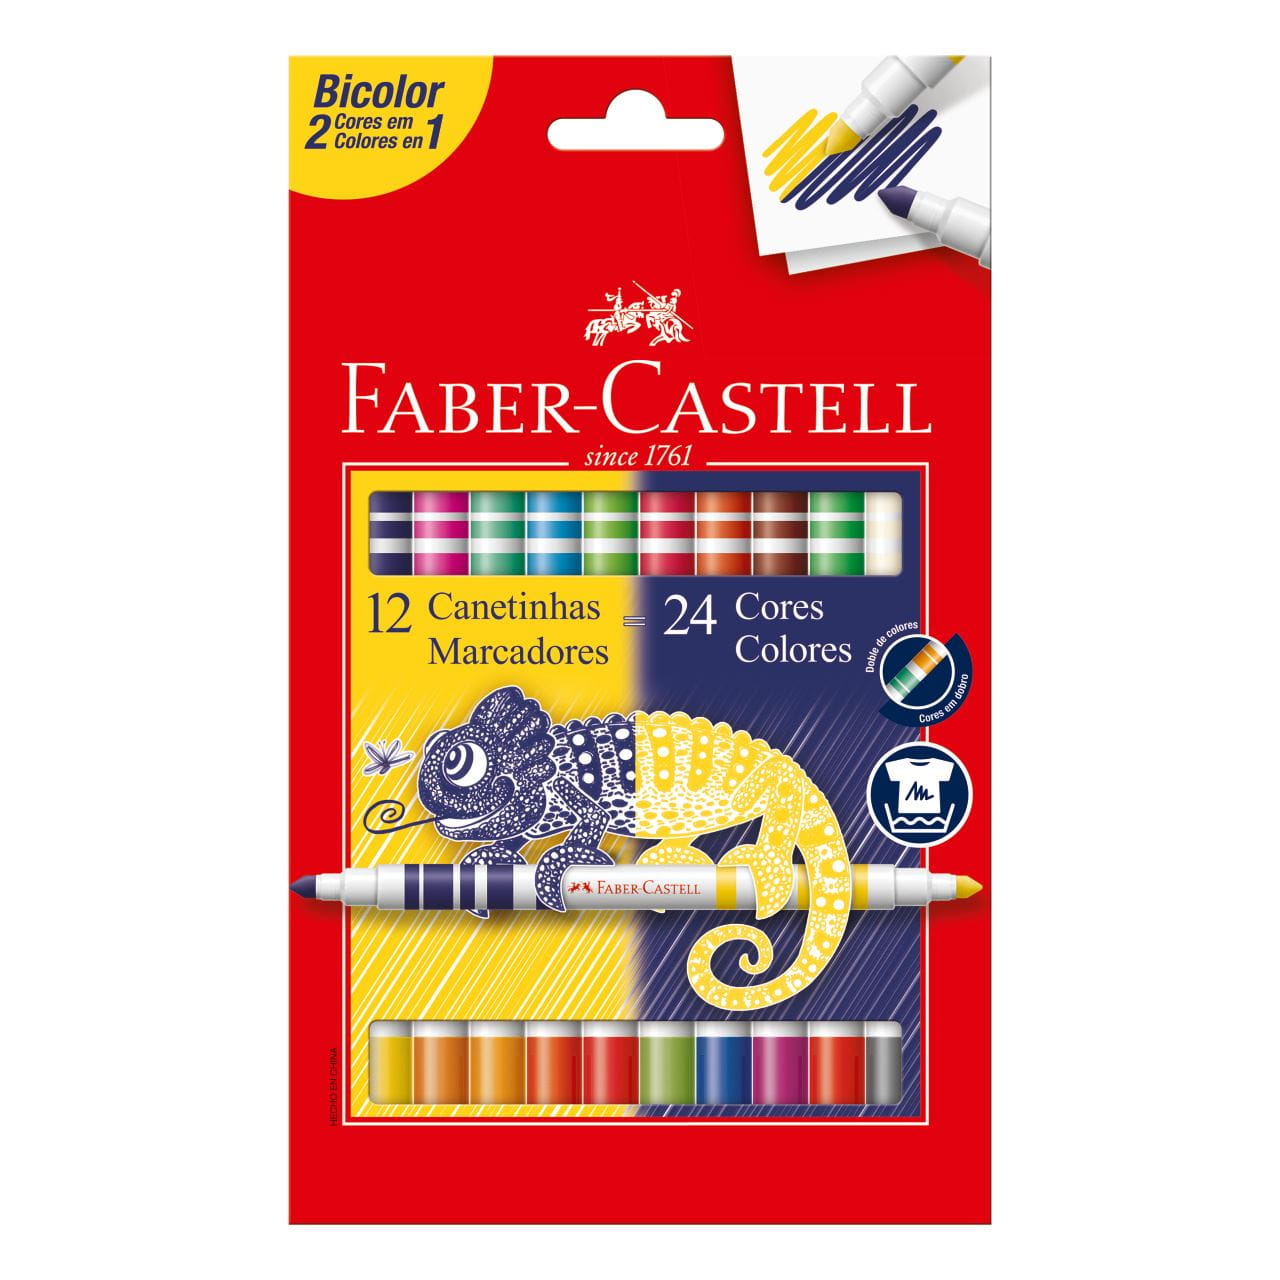 Faber-Castell - Canetinha Hidrografica Bicolor 12 Canetas = 24 Cores